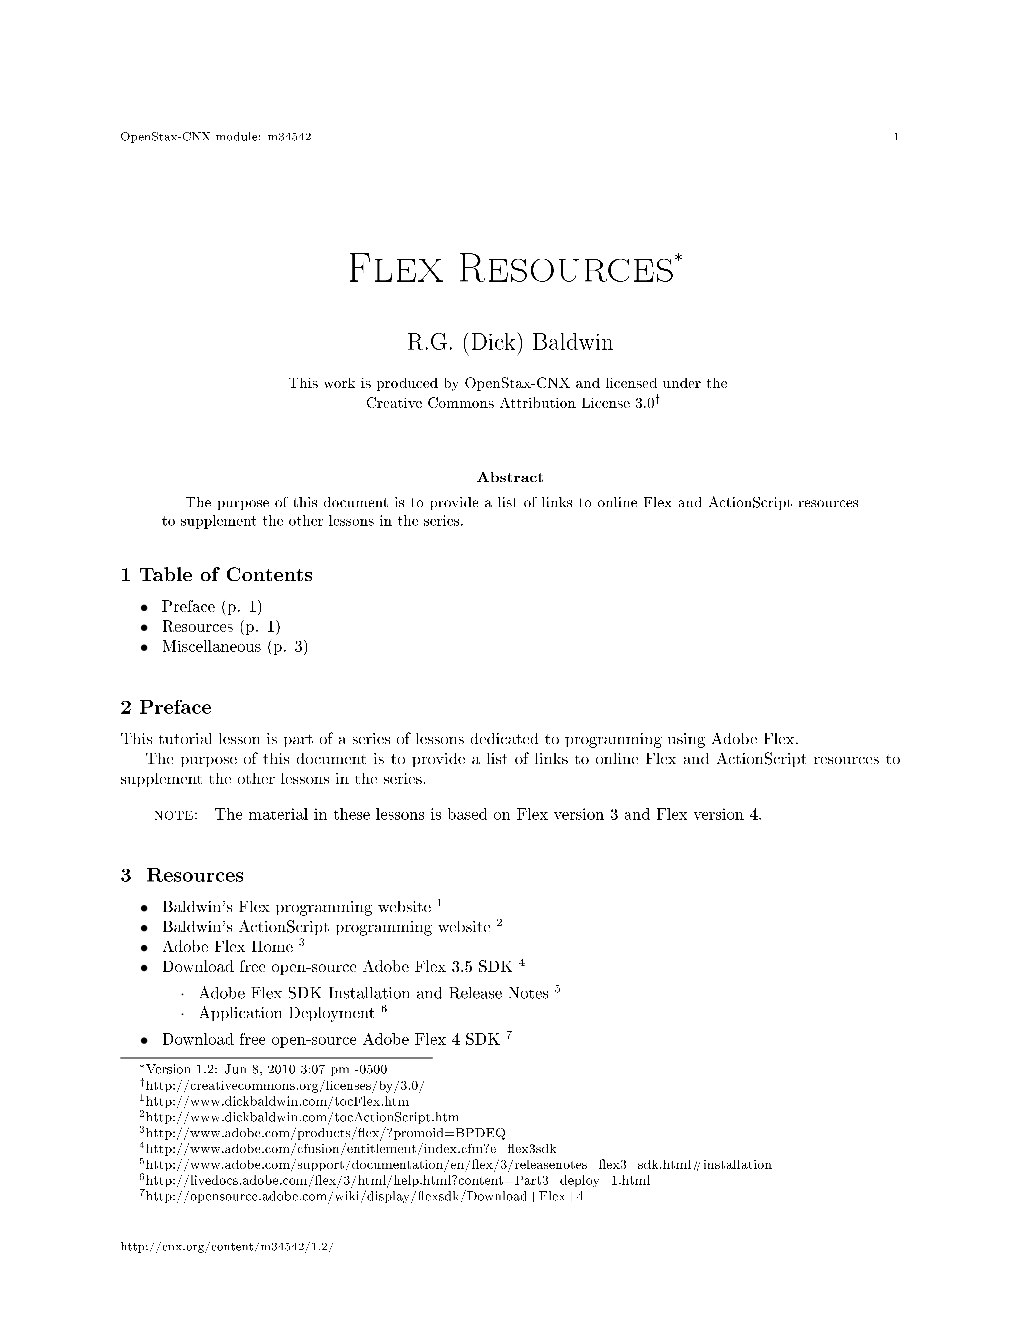 Flex Resources*